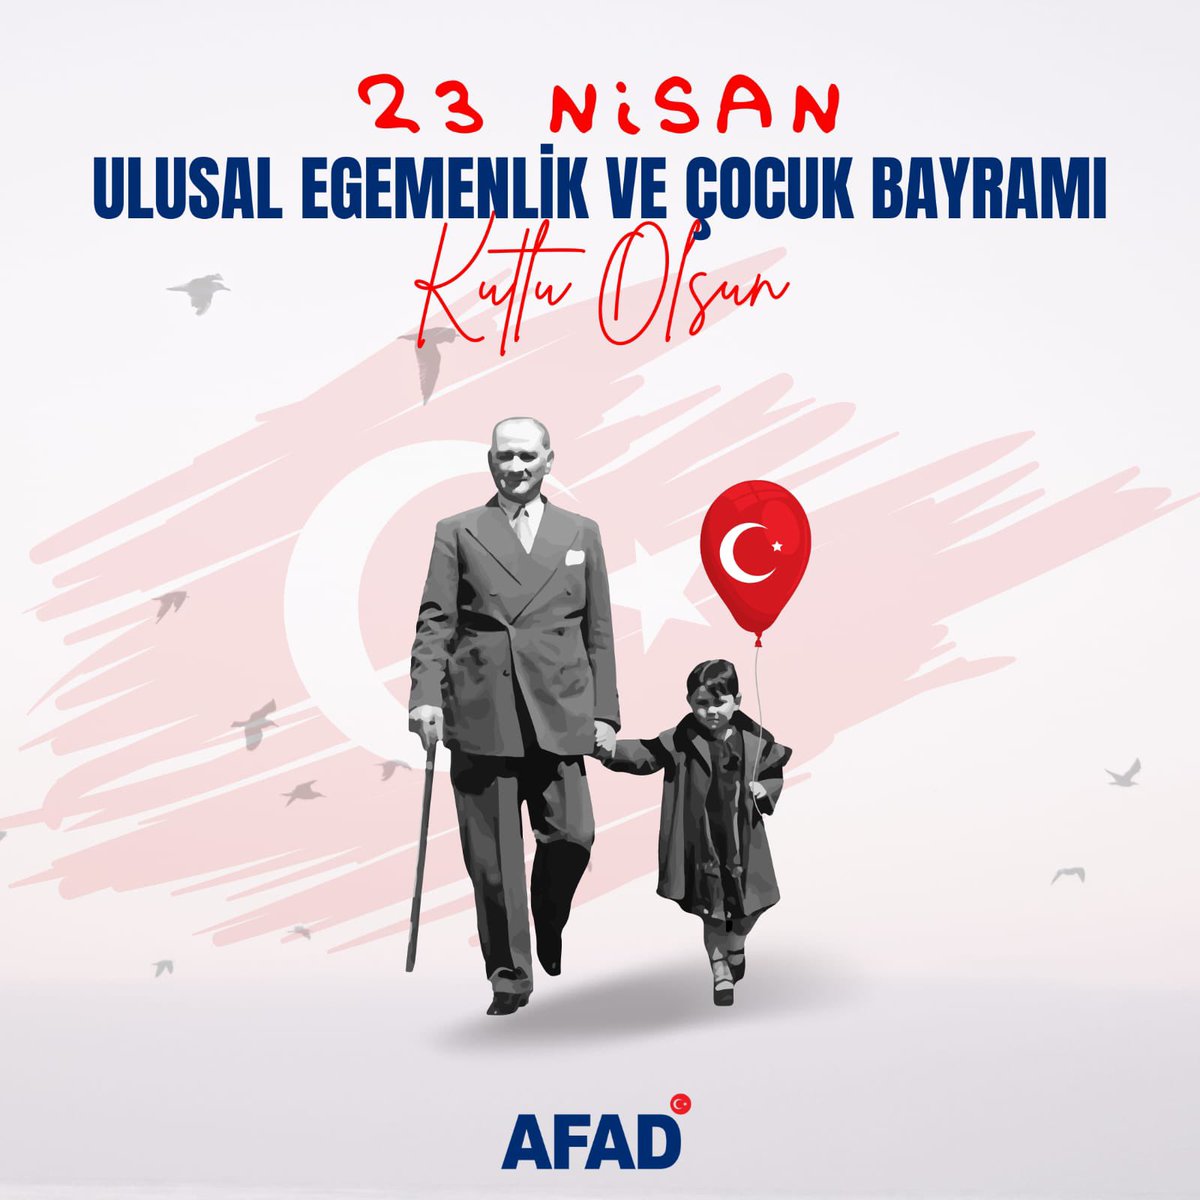 👧🏻👦🏻 Bugün, #23Nisan Ulusal Egemenlik ve Çocuk Bayramı Gazi meclisimizin 1️⃣0️⃣4️⃣. kuruluş yıldönümününde, çocuklarımız başta olmak üzere tüm Milletimizin bayramını kutluyoruz. Bu günü çocuklara armağan eden Gazi Mustafa Kemal Atatürk başta olmak üzere tarihimizin şanlı